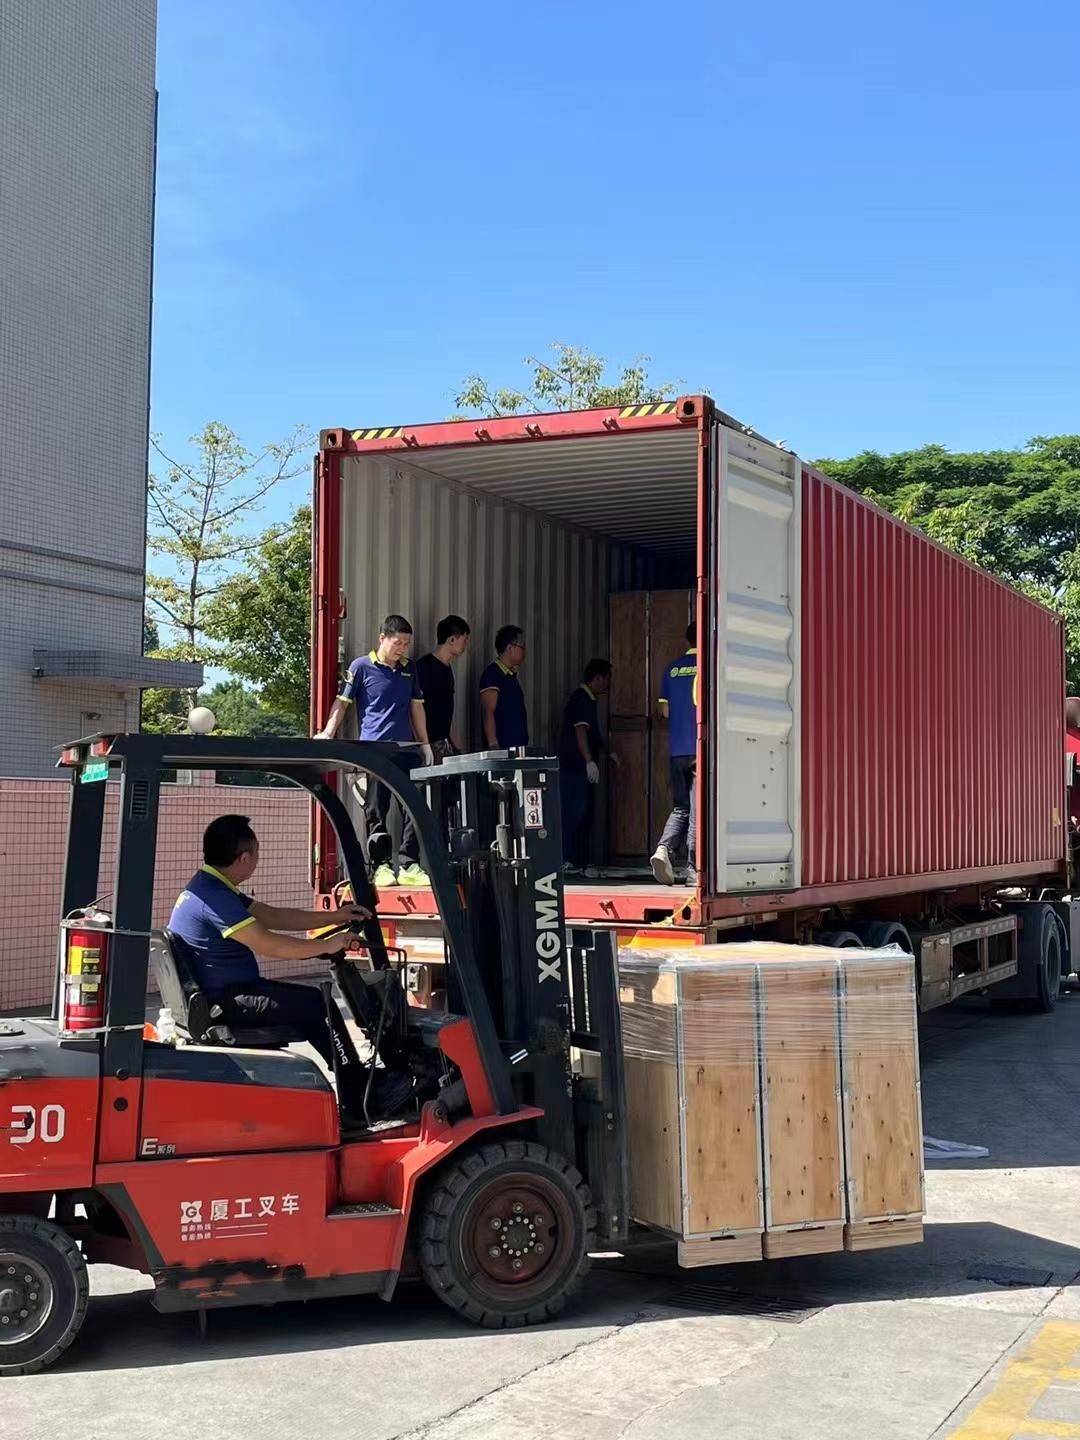 Najnowsza dostawa kołowrotu trójnożnego dla dystrybutora w Brazylii – Intelbras